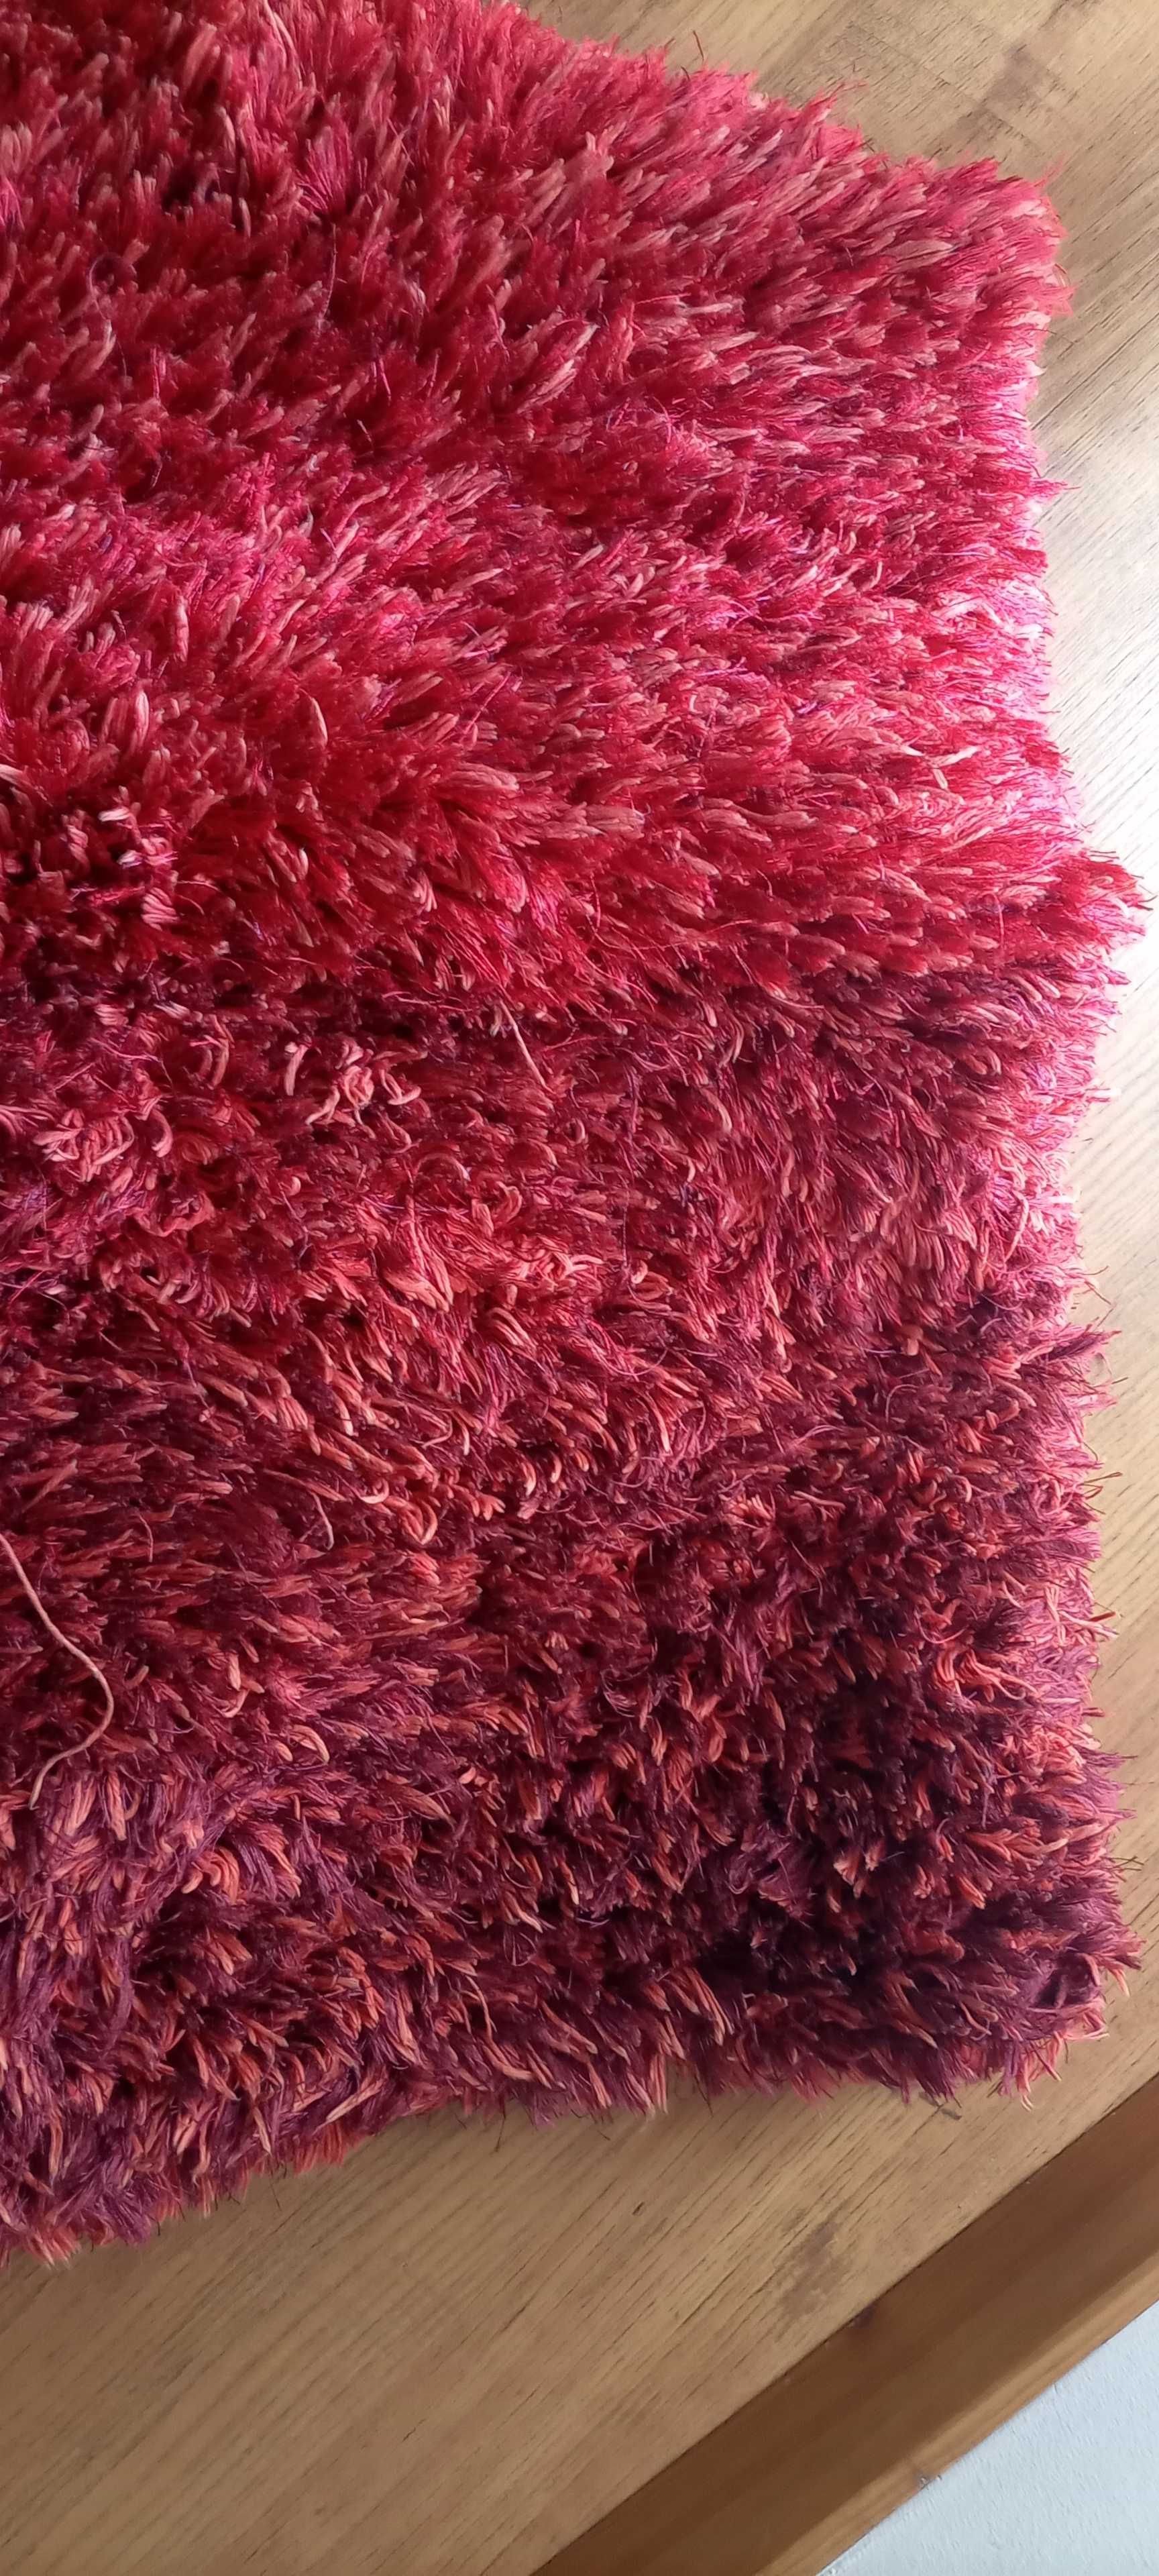 Tapete (carpete) vermelho escuro